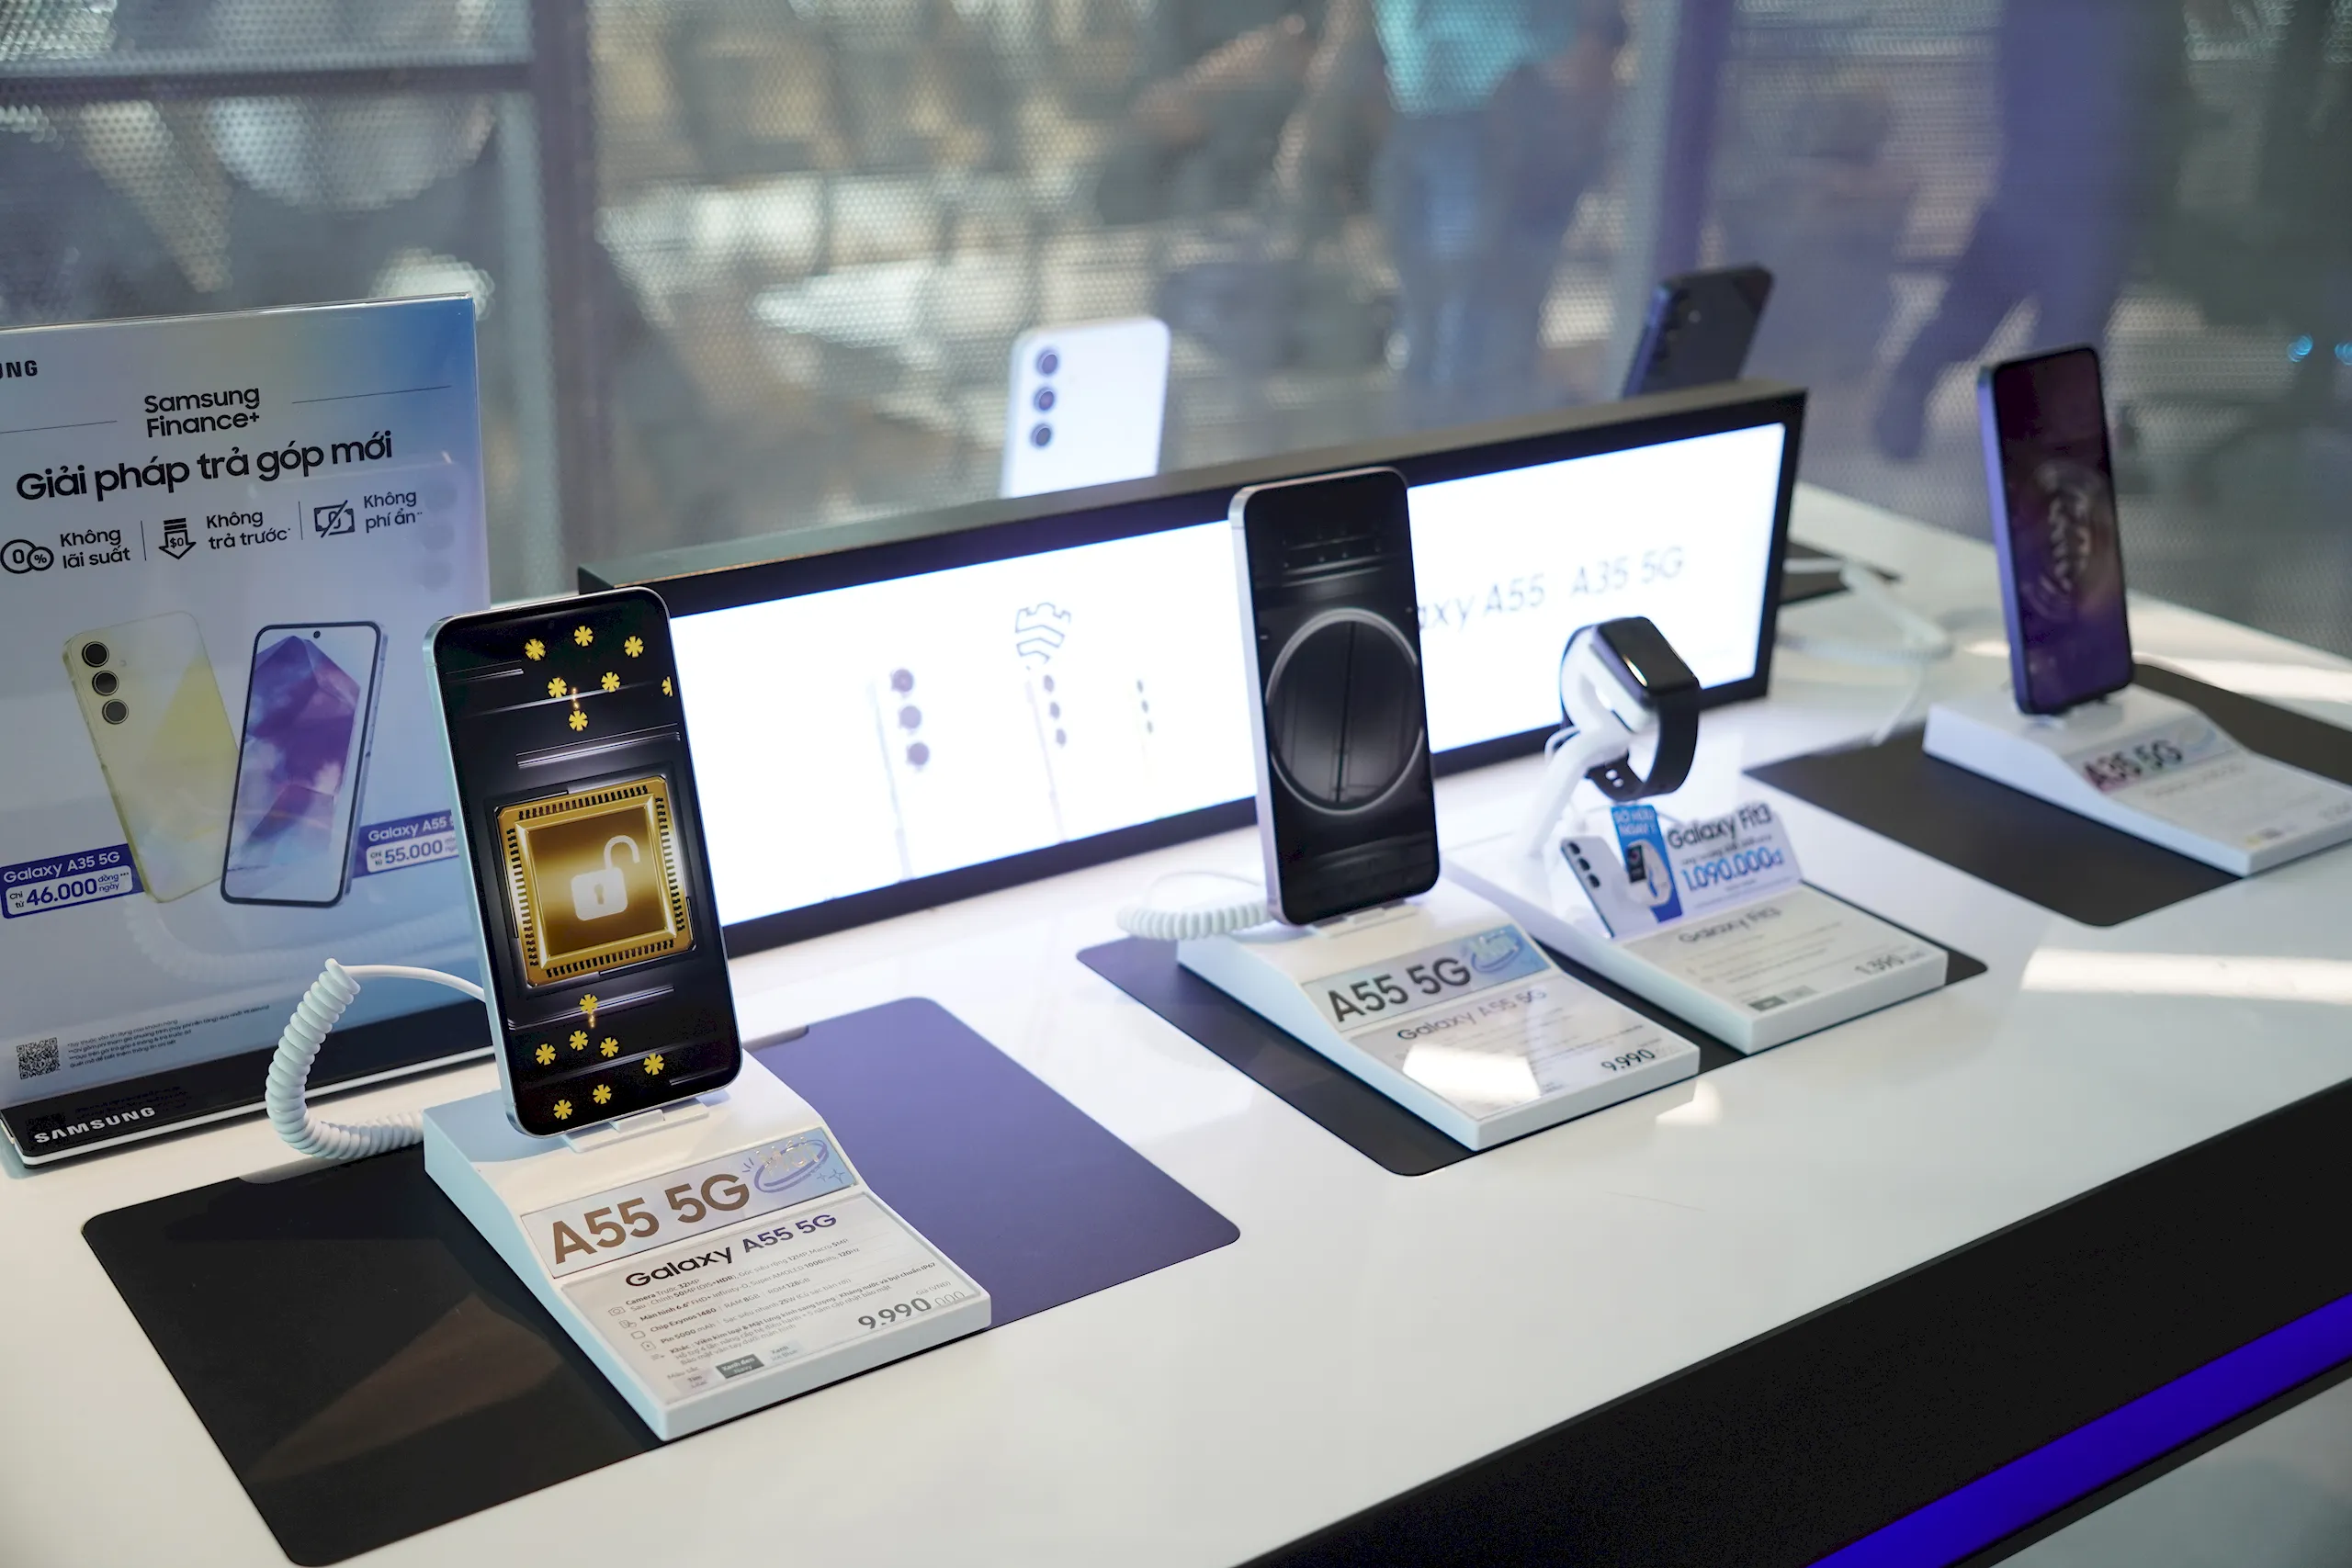 Samsung Galaxy A55 và A35 5G trình làng thị trường Việt: Cải tiến thiết kế và hiệu năng ấn tượng cùng bảo mật toàn diện